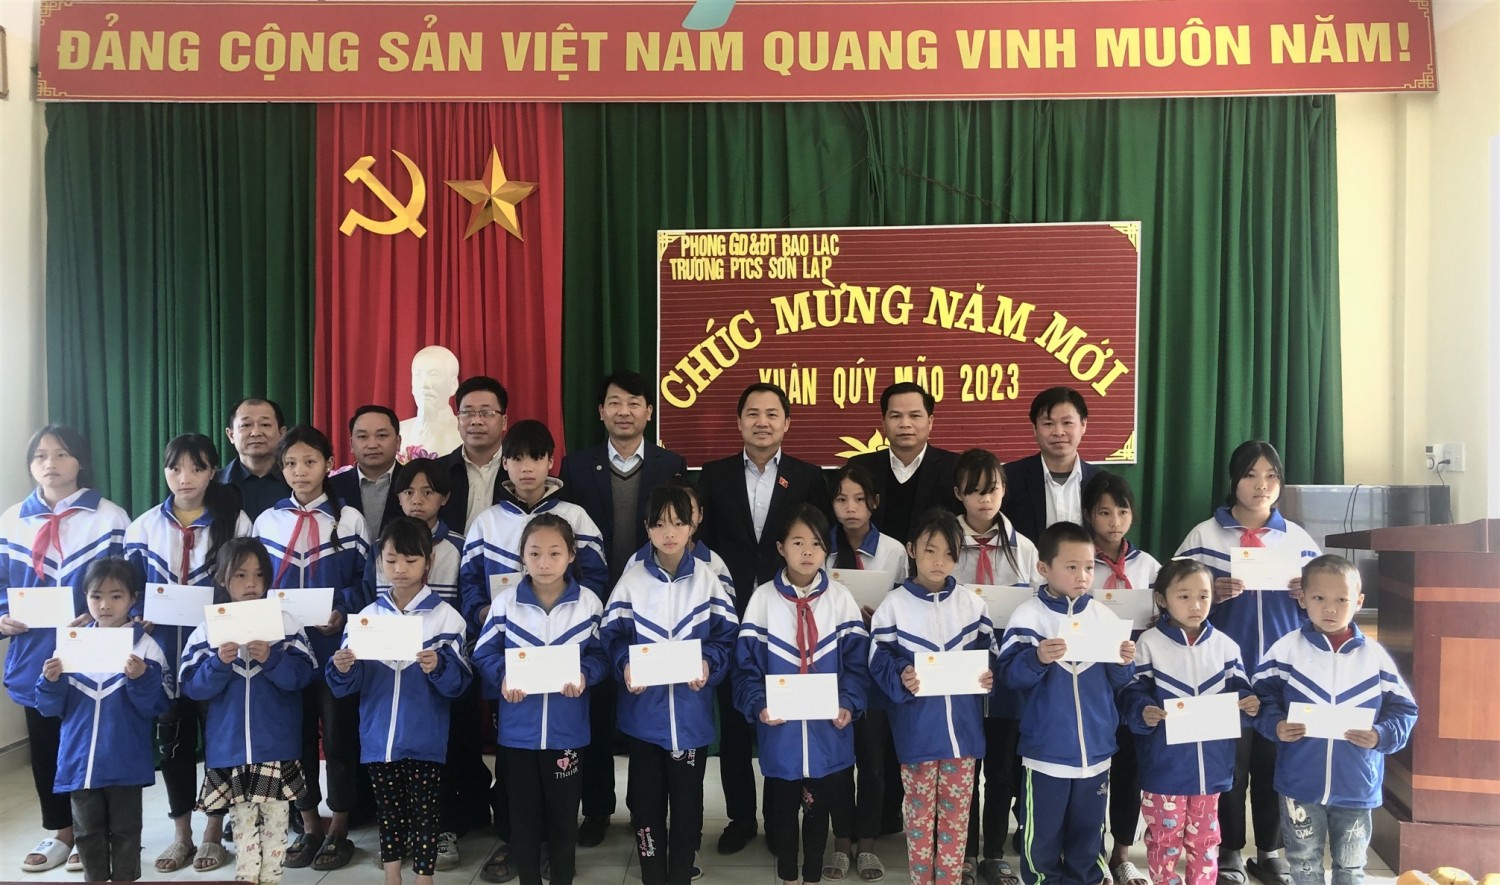 Đoàn công tác trao học bổng cho học sinh hoàn cảnh khó khăn Trường Tiểu học, THCS Sơn Lập (Bảo Lạc).